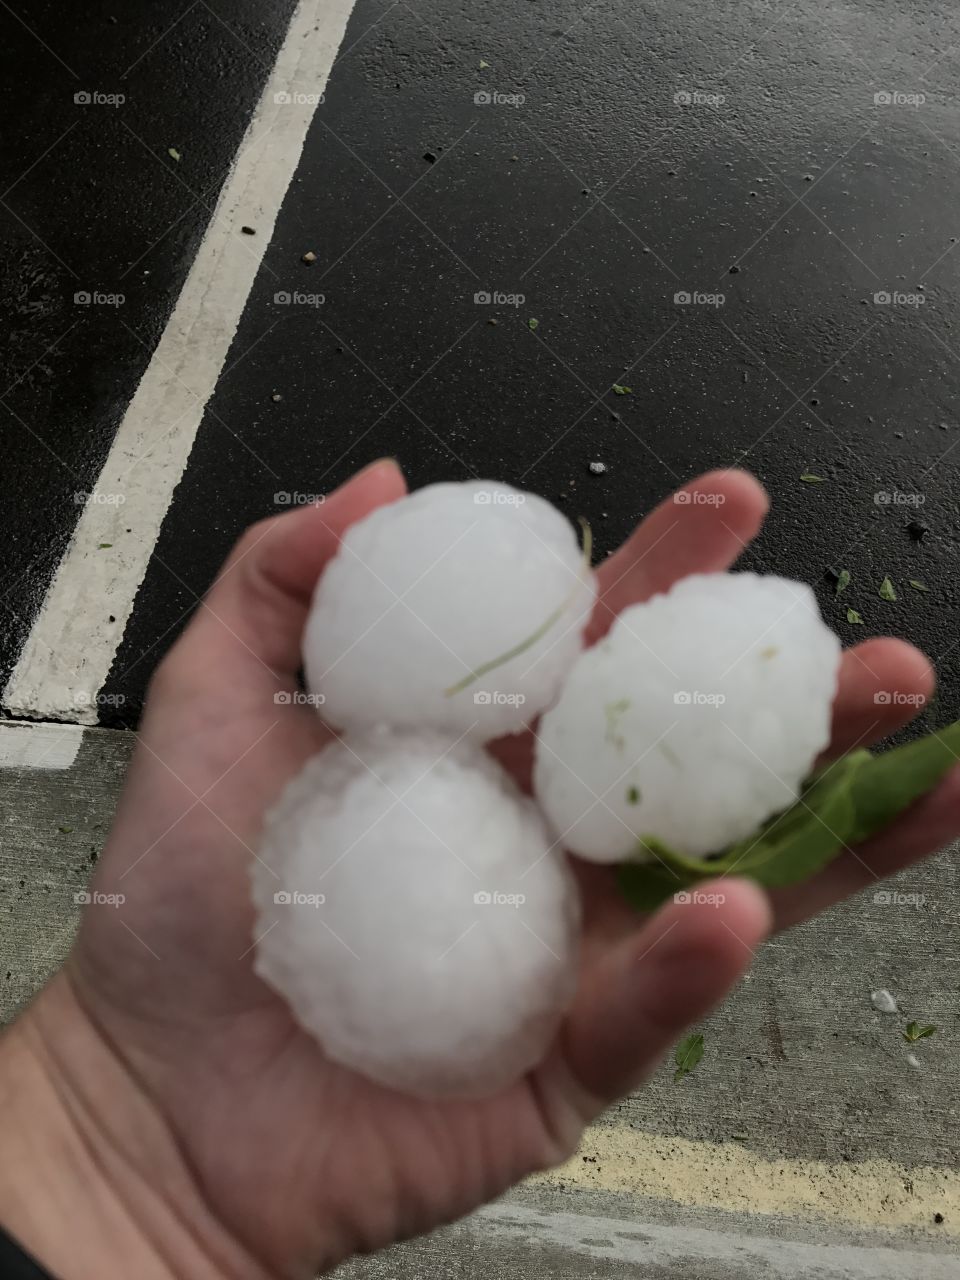 Big hail